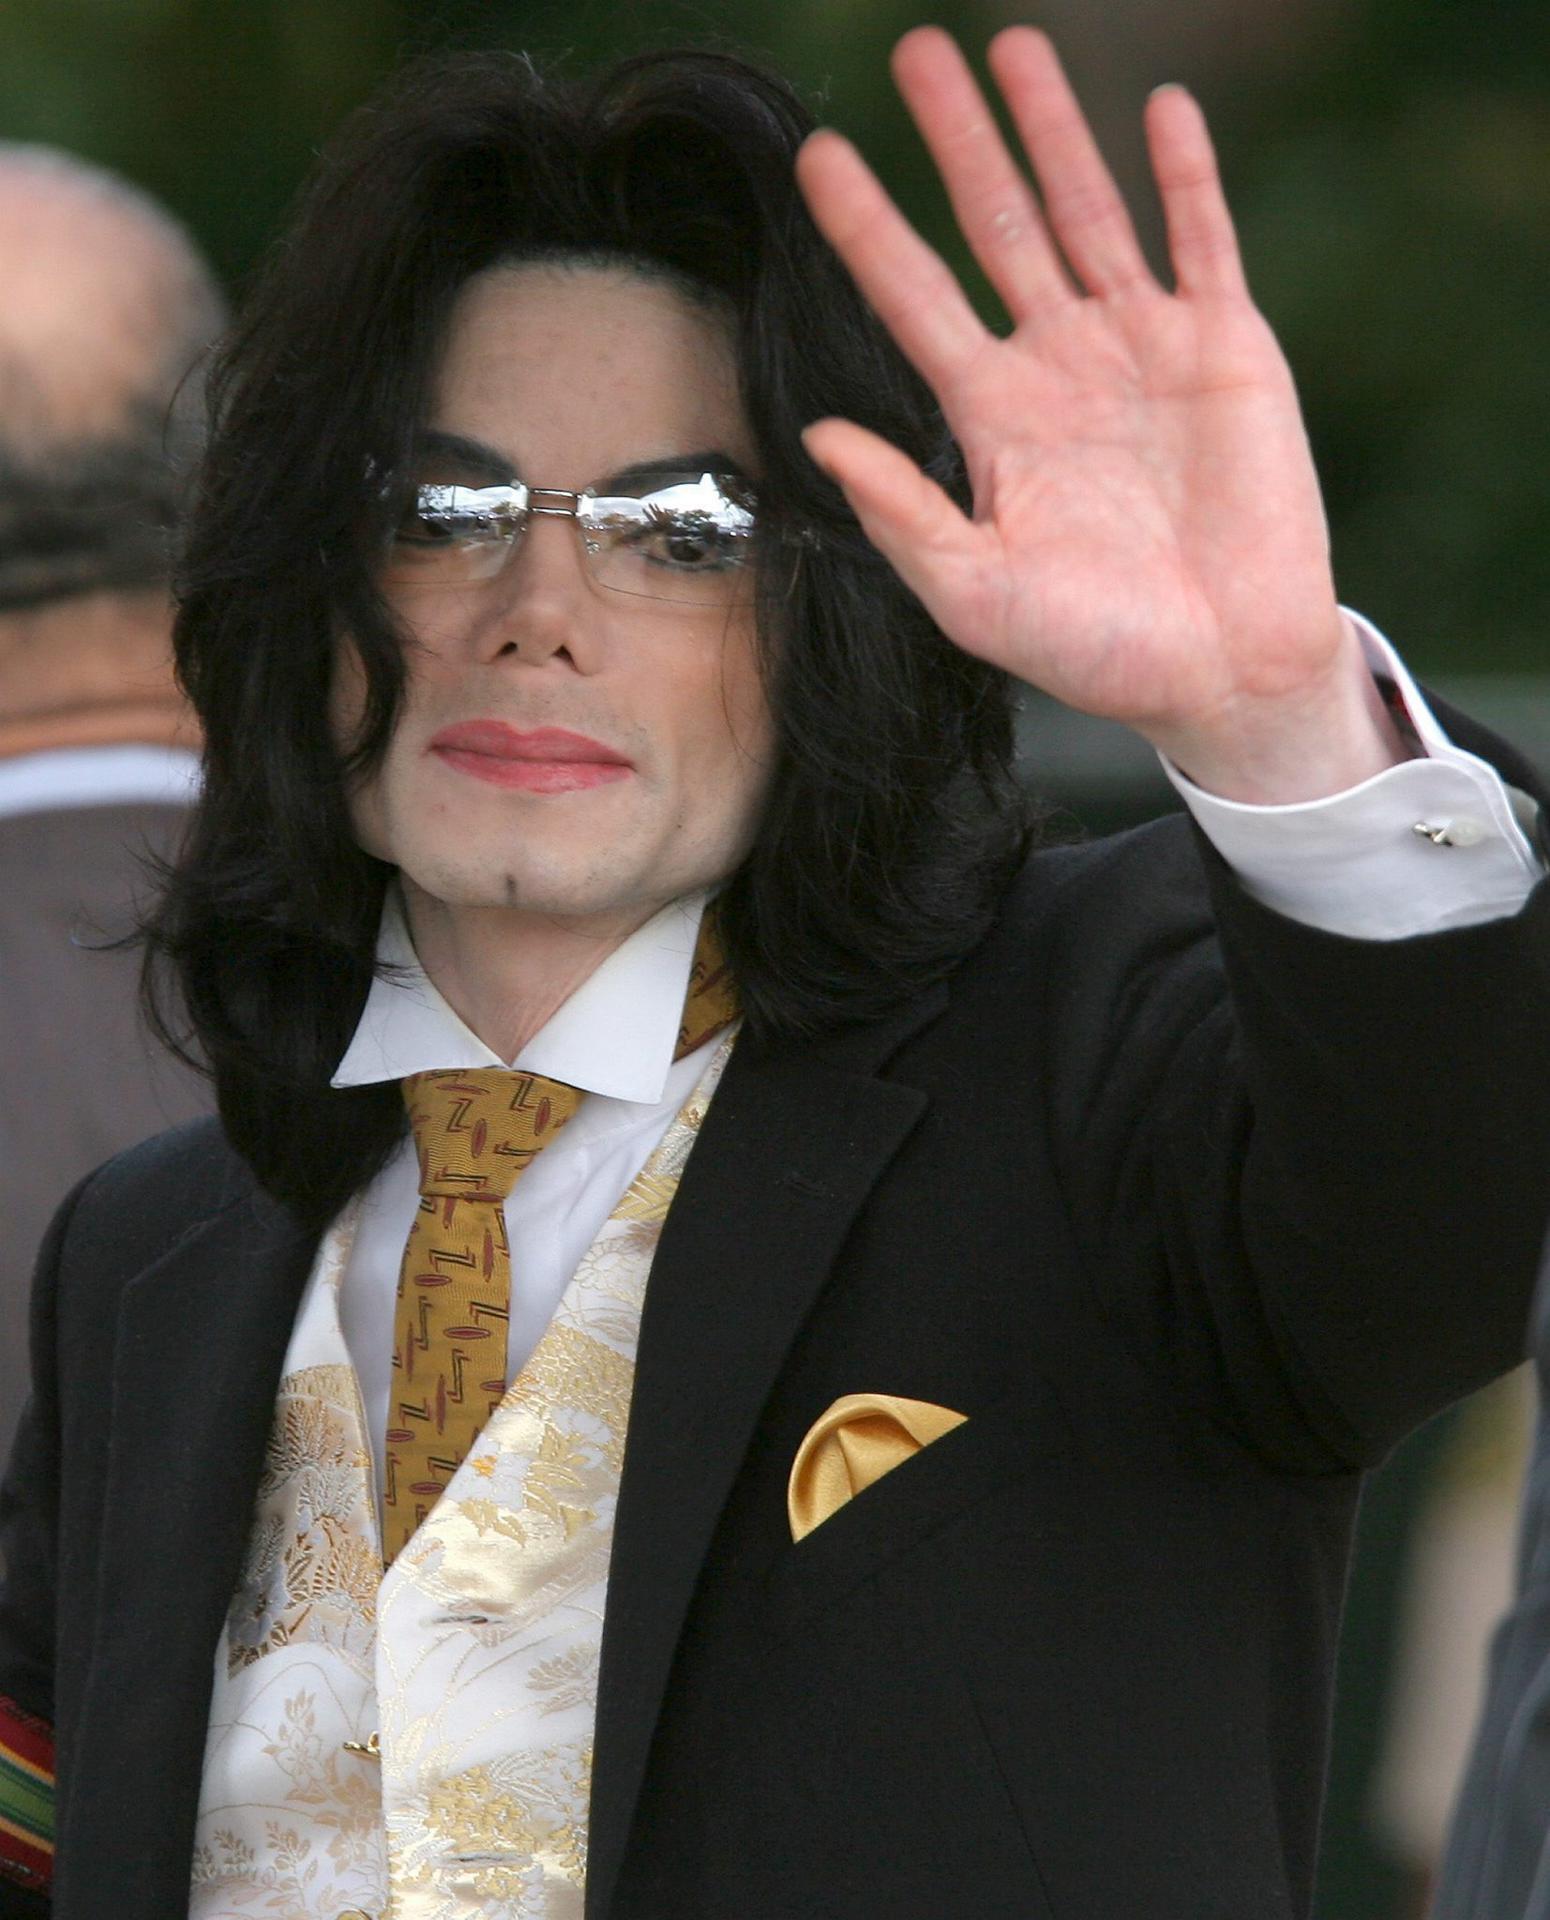 Foto de archivo del cantante de pop estadounidense Michael Jackson al llegar a una nueva jornada del juicio en su contra, el 3 de junio de 2005, en el juzgado del Condado de Santa Bárbara (Estados Unidos). EFE / Connie Aramaki